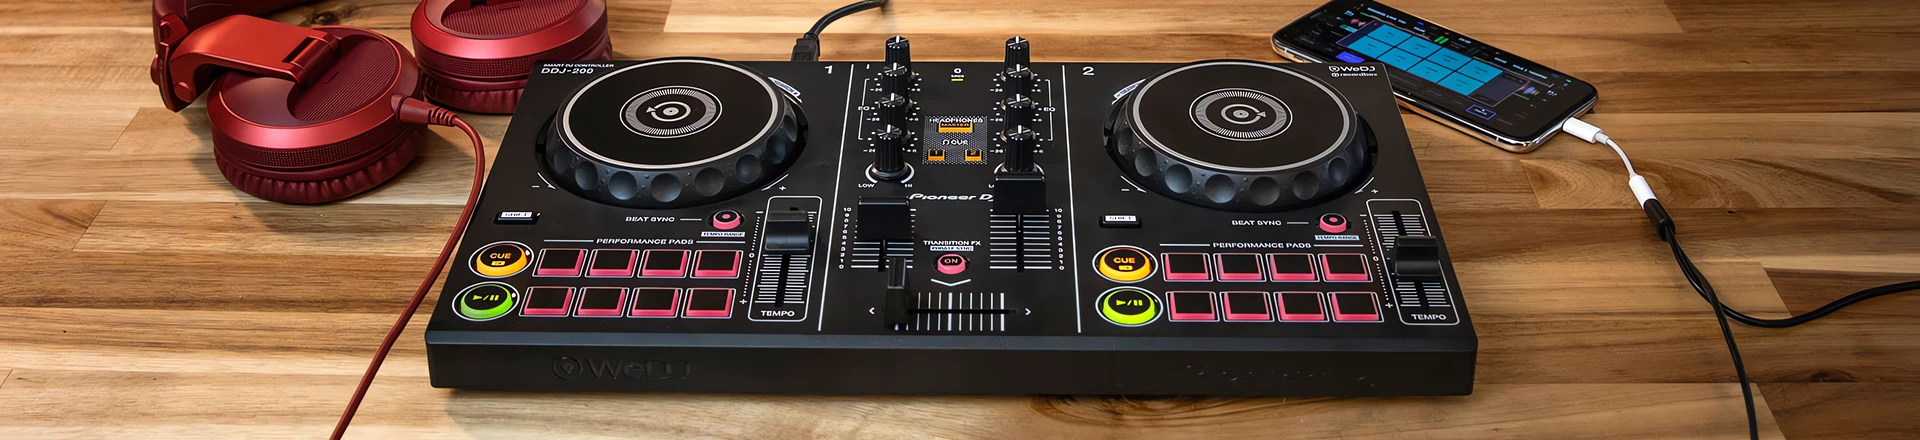 DJ'ka dla każdego - nowy Pioneer DJ DDJ-200